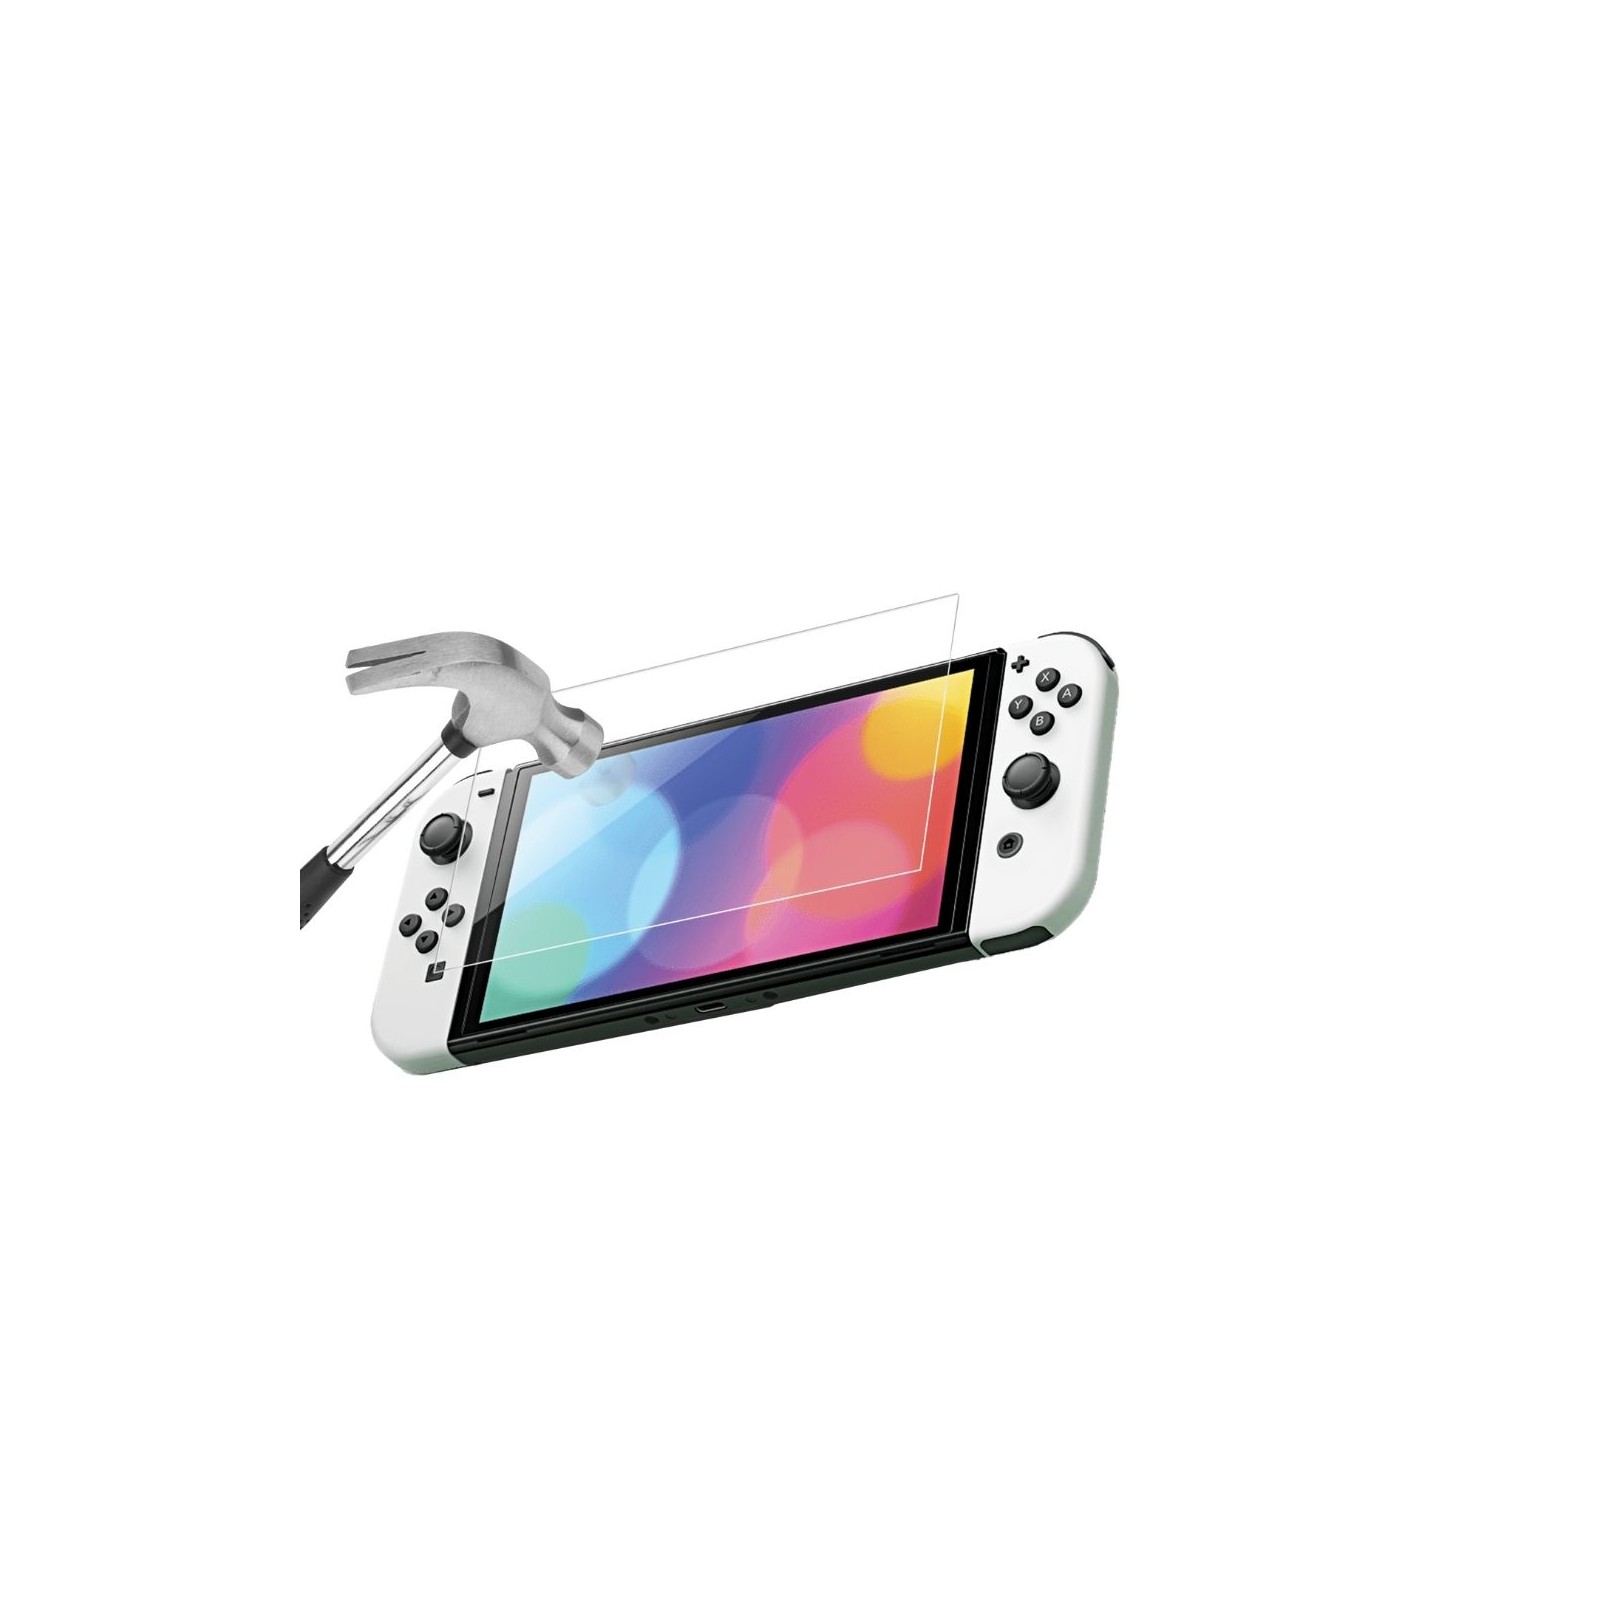 Protection d écran Nintendo Switch OLED 7 - Conception en Verre Trempé 9H -  anti-rayures - transparence totale